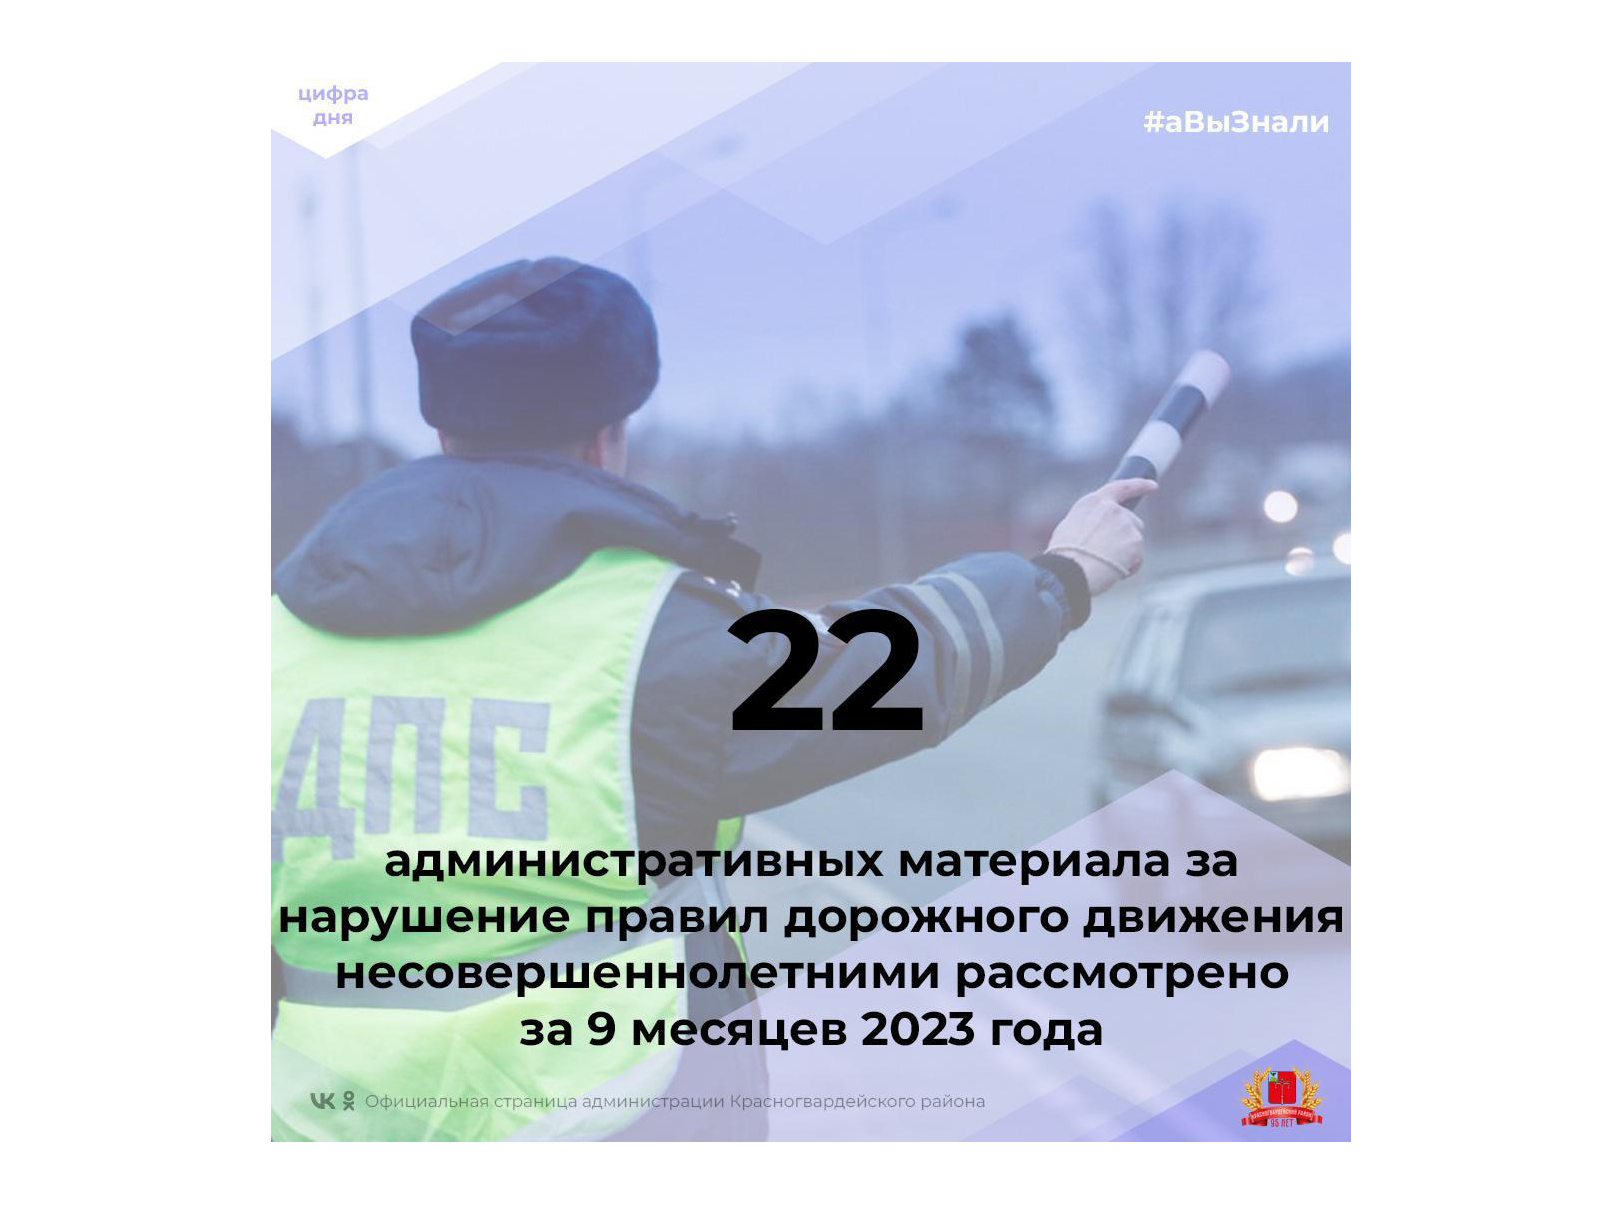 #аВыЗнали, что 22 административных материала за нарушение правил дорожного движения несовершеннолетними рассмотрено за 9 месяцев 2023 года?.